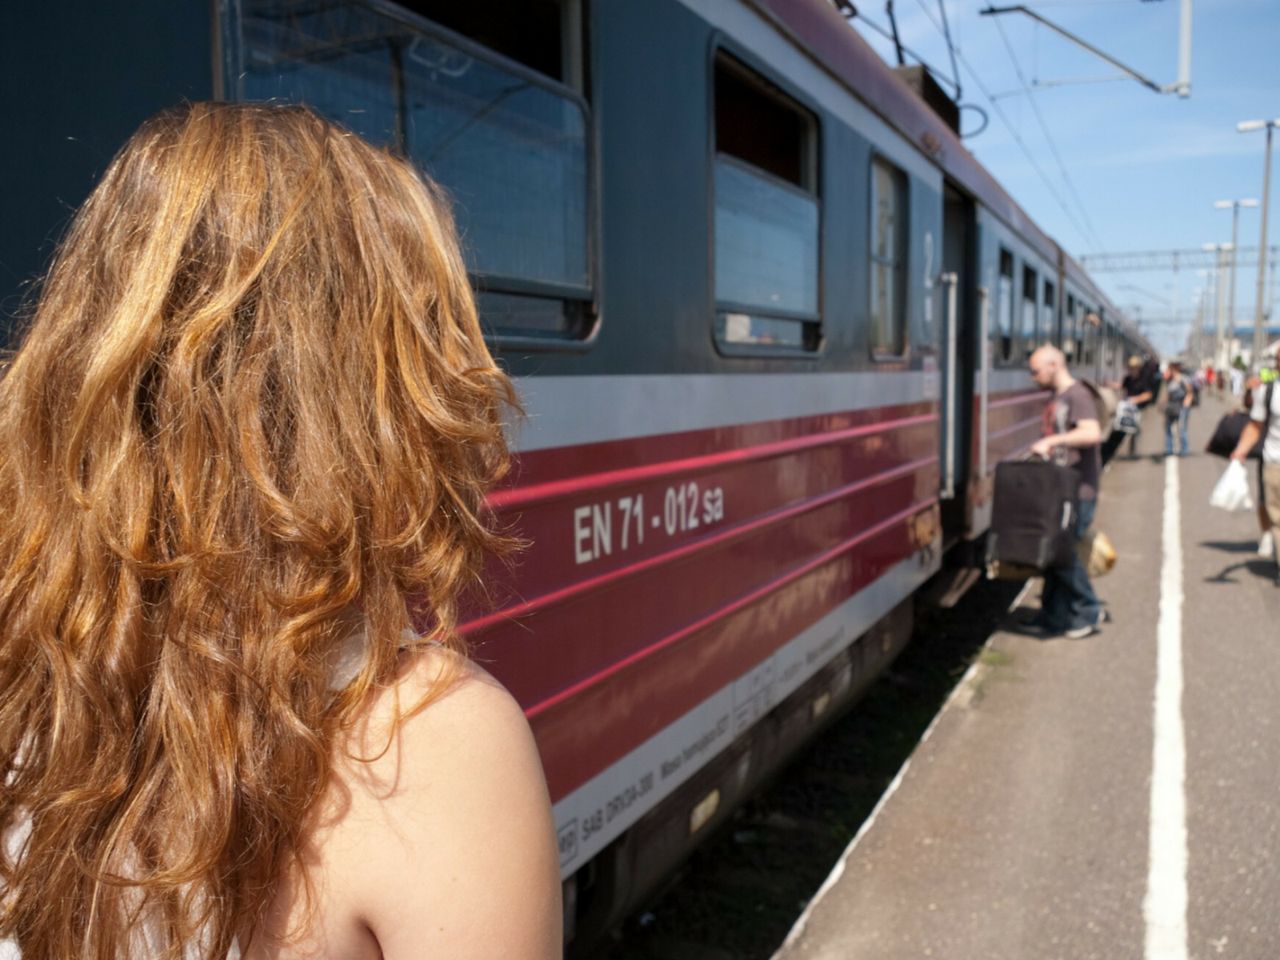 Wiele kobiet obawia się podróżować pociągami - fotografia ilustracyjna